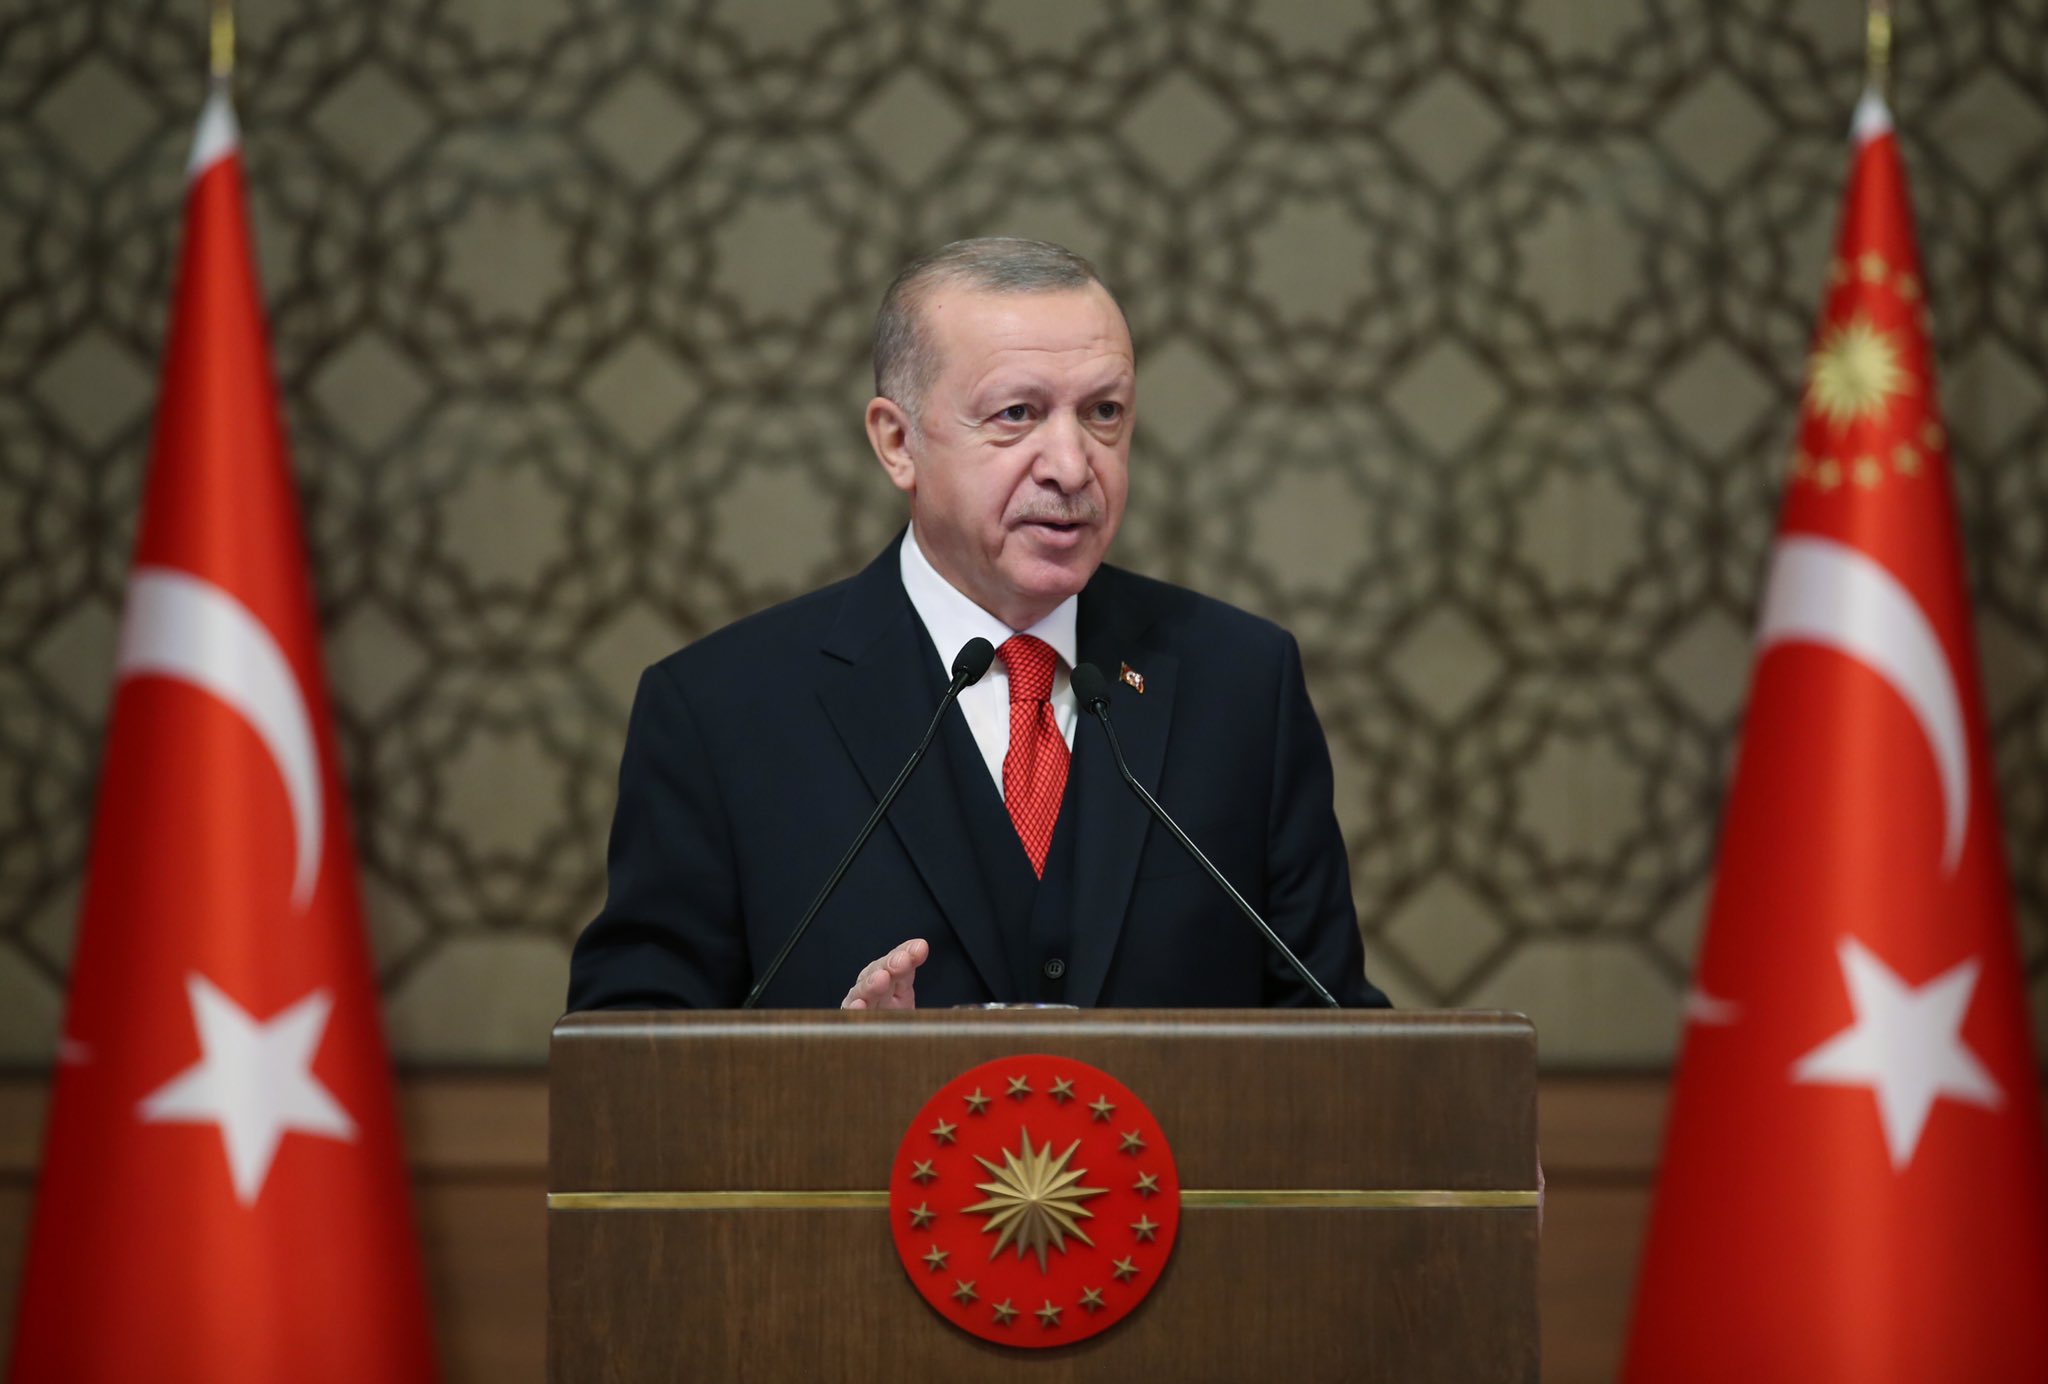 Cumhurbaşkanı Erdoğan: Lezbiyenlerin söylediklerine takılmayalım biz analarımıza bakalım